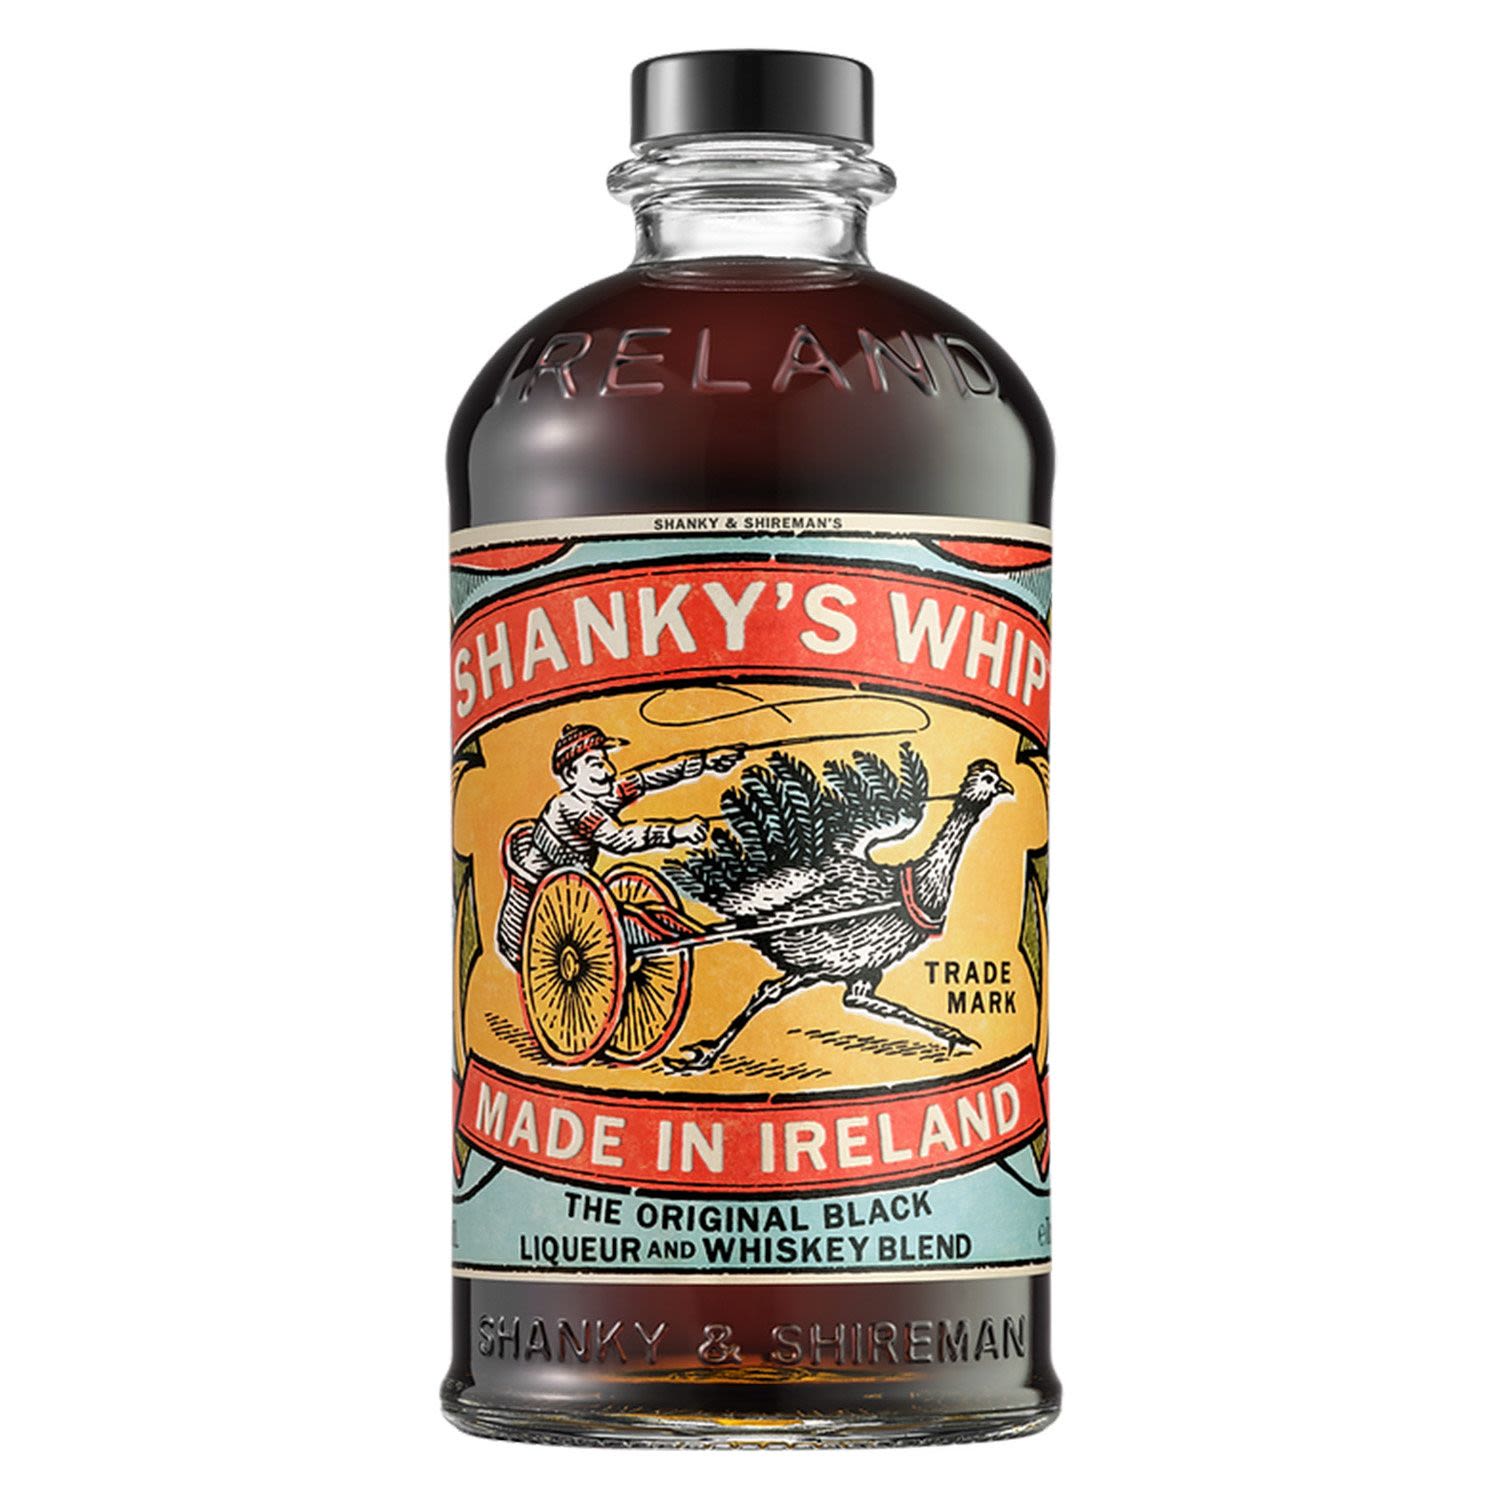 Shanky's Whip Black Irish Whiskey Liqueur 700mL Bottle